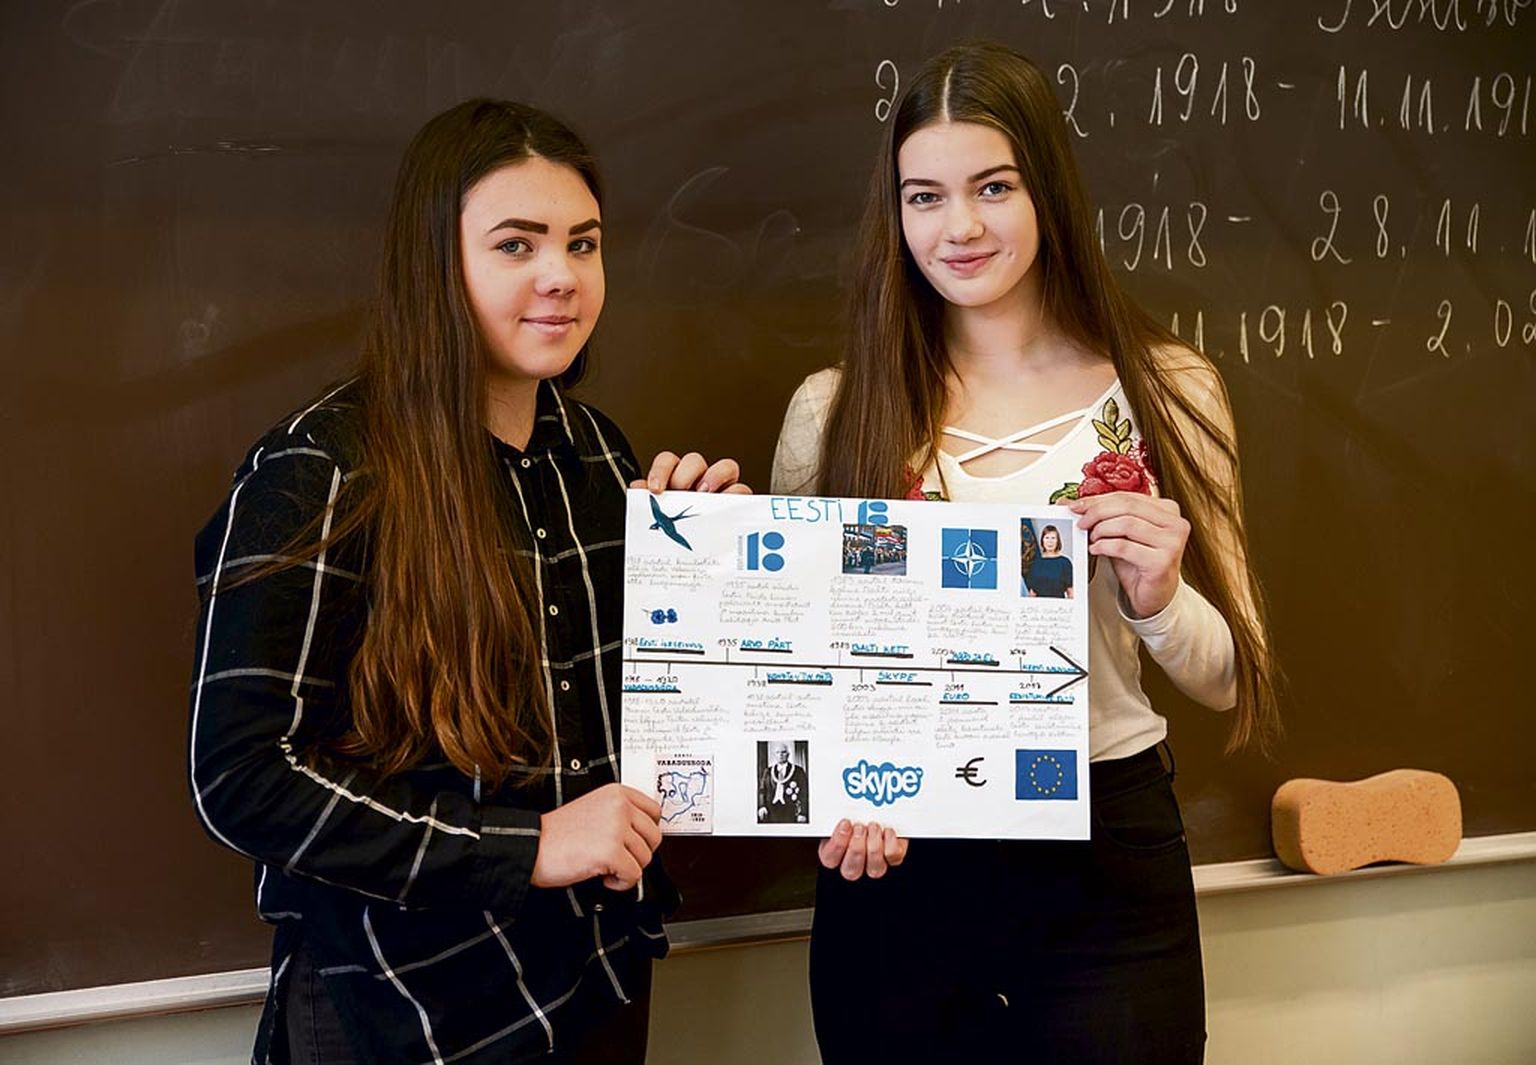 Õpilased Eiriin Jõgeva ja Kerttu Roosme esitlesid klassi ees oma valikut Eesti Vabariigi 100aastase ajaloo mõjukamatest või neid ennast enim puudutavatest sündmustest.